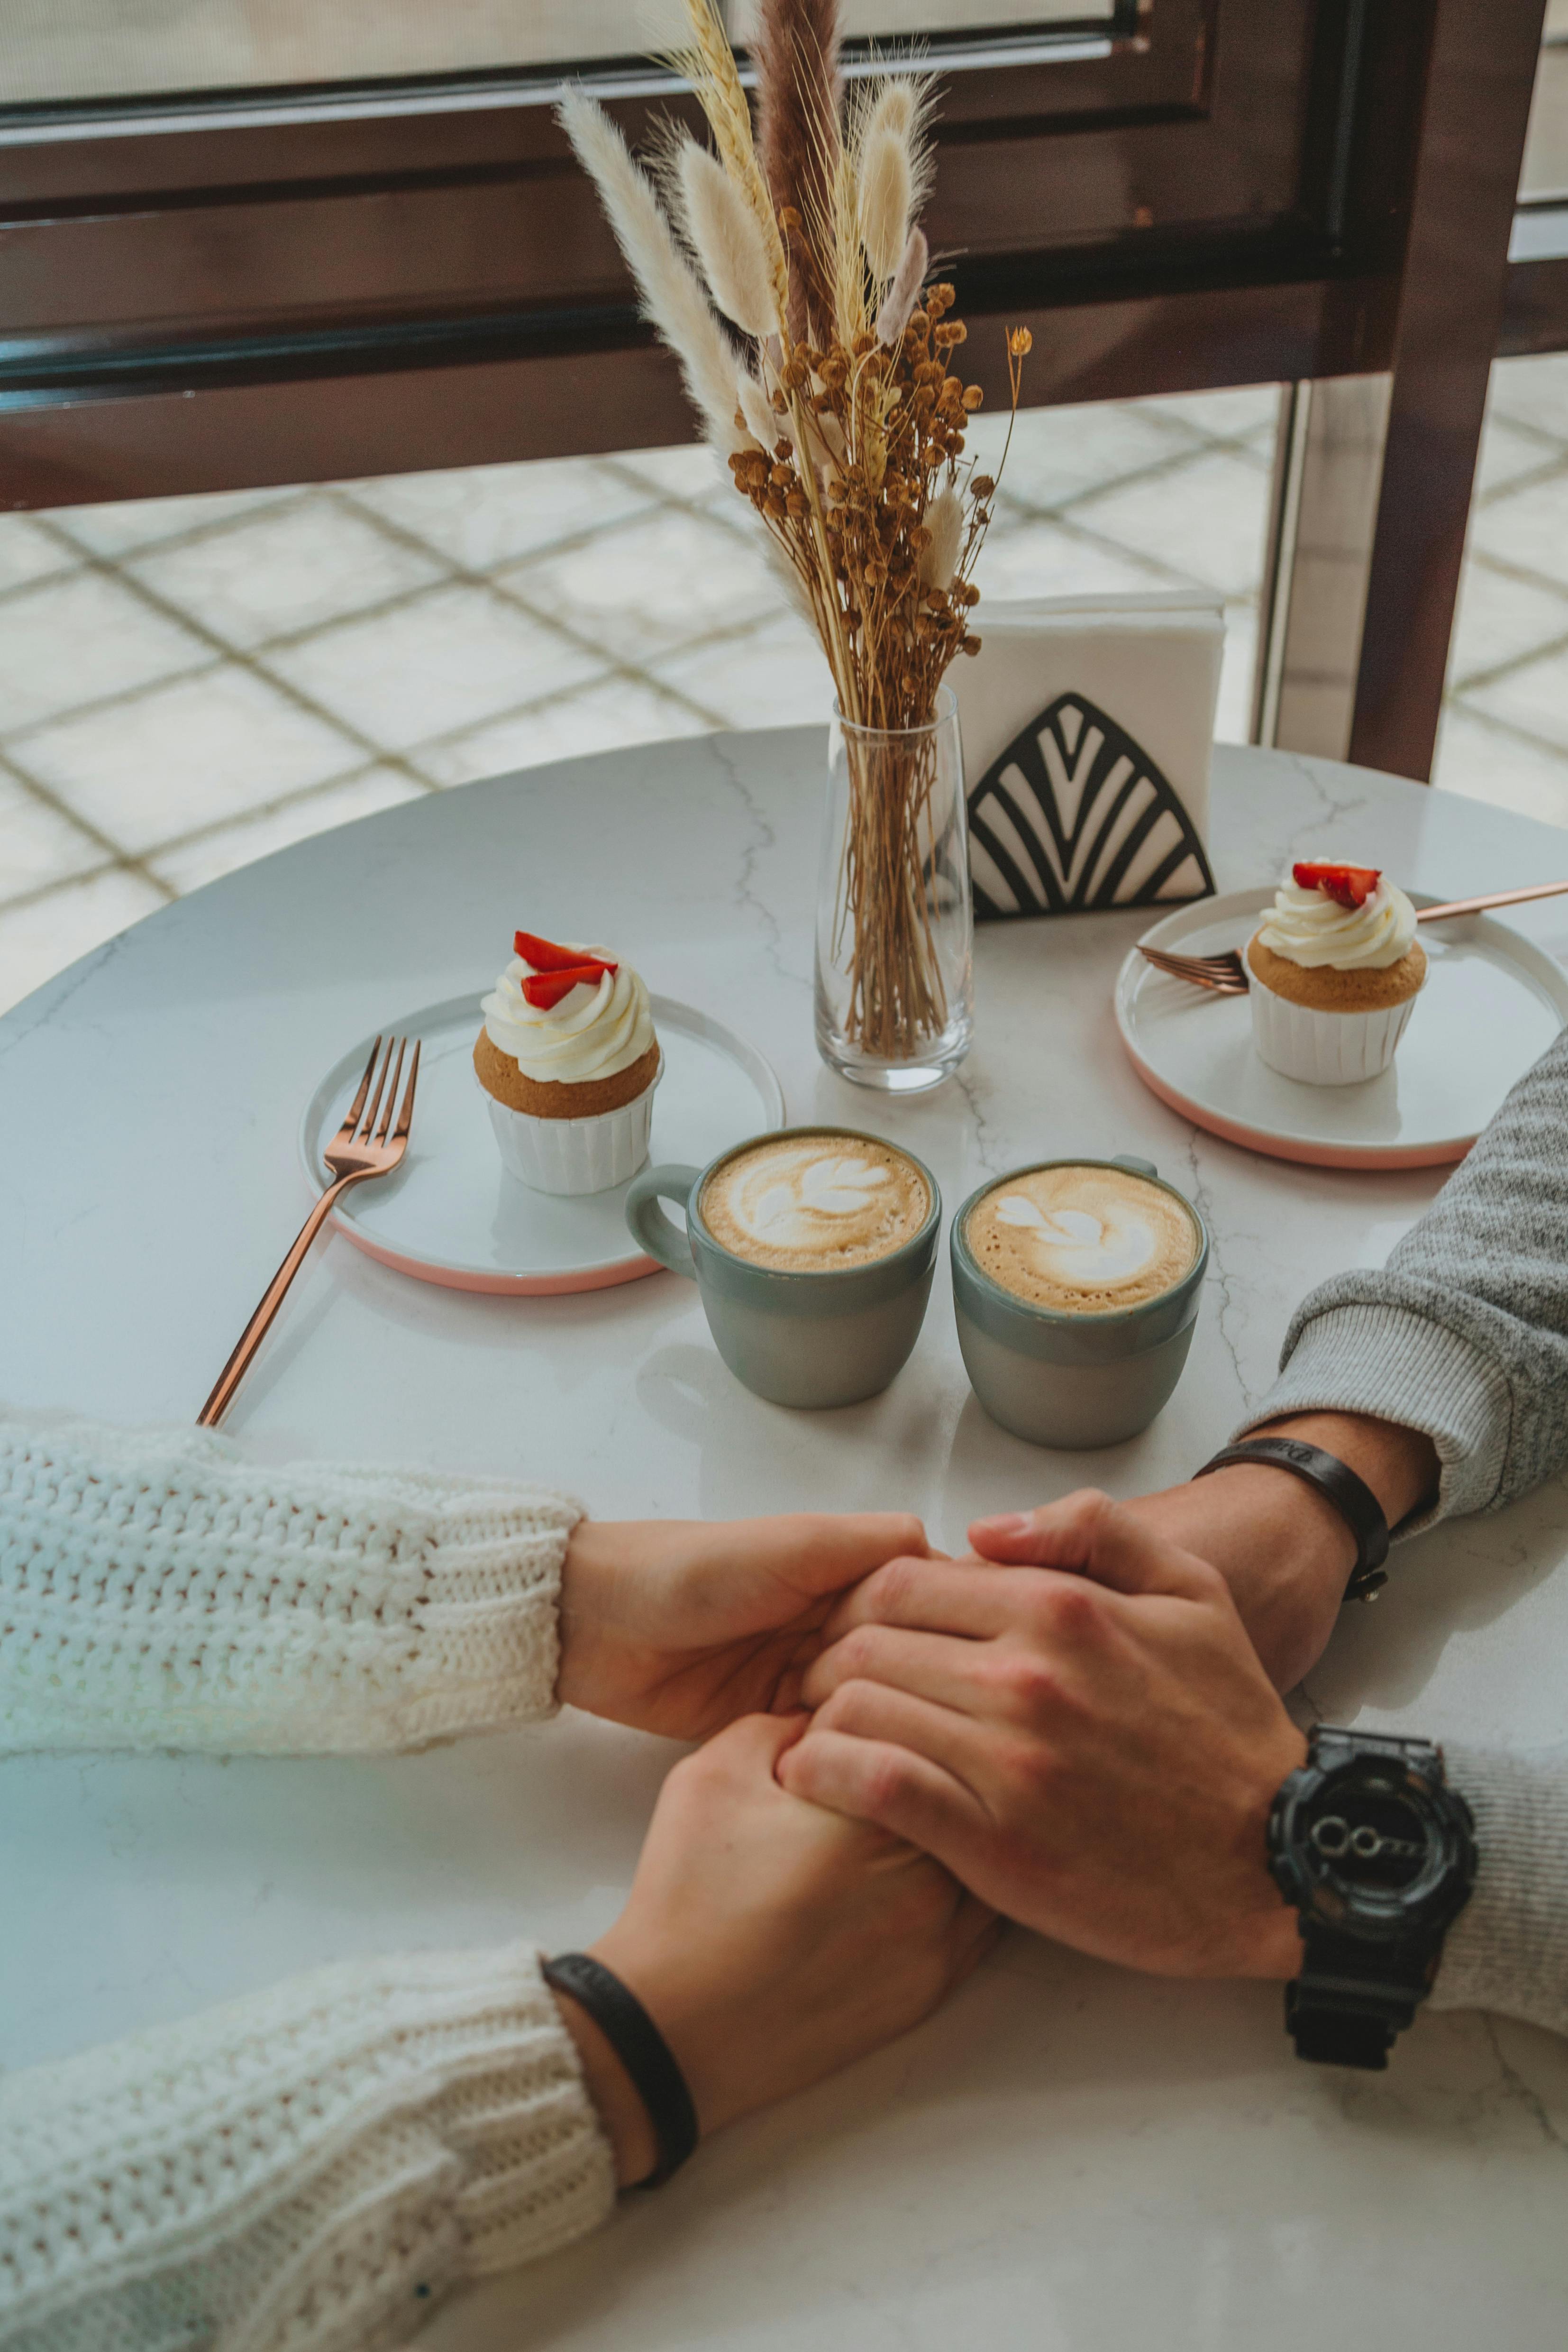 Un couple se tenant par la main tout en dégustant un dessert et un café | Source : Pexels